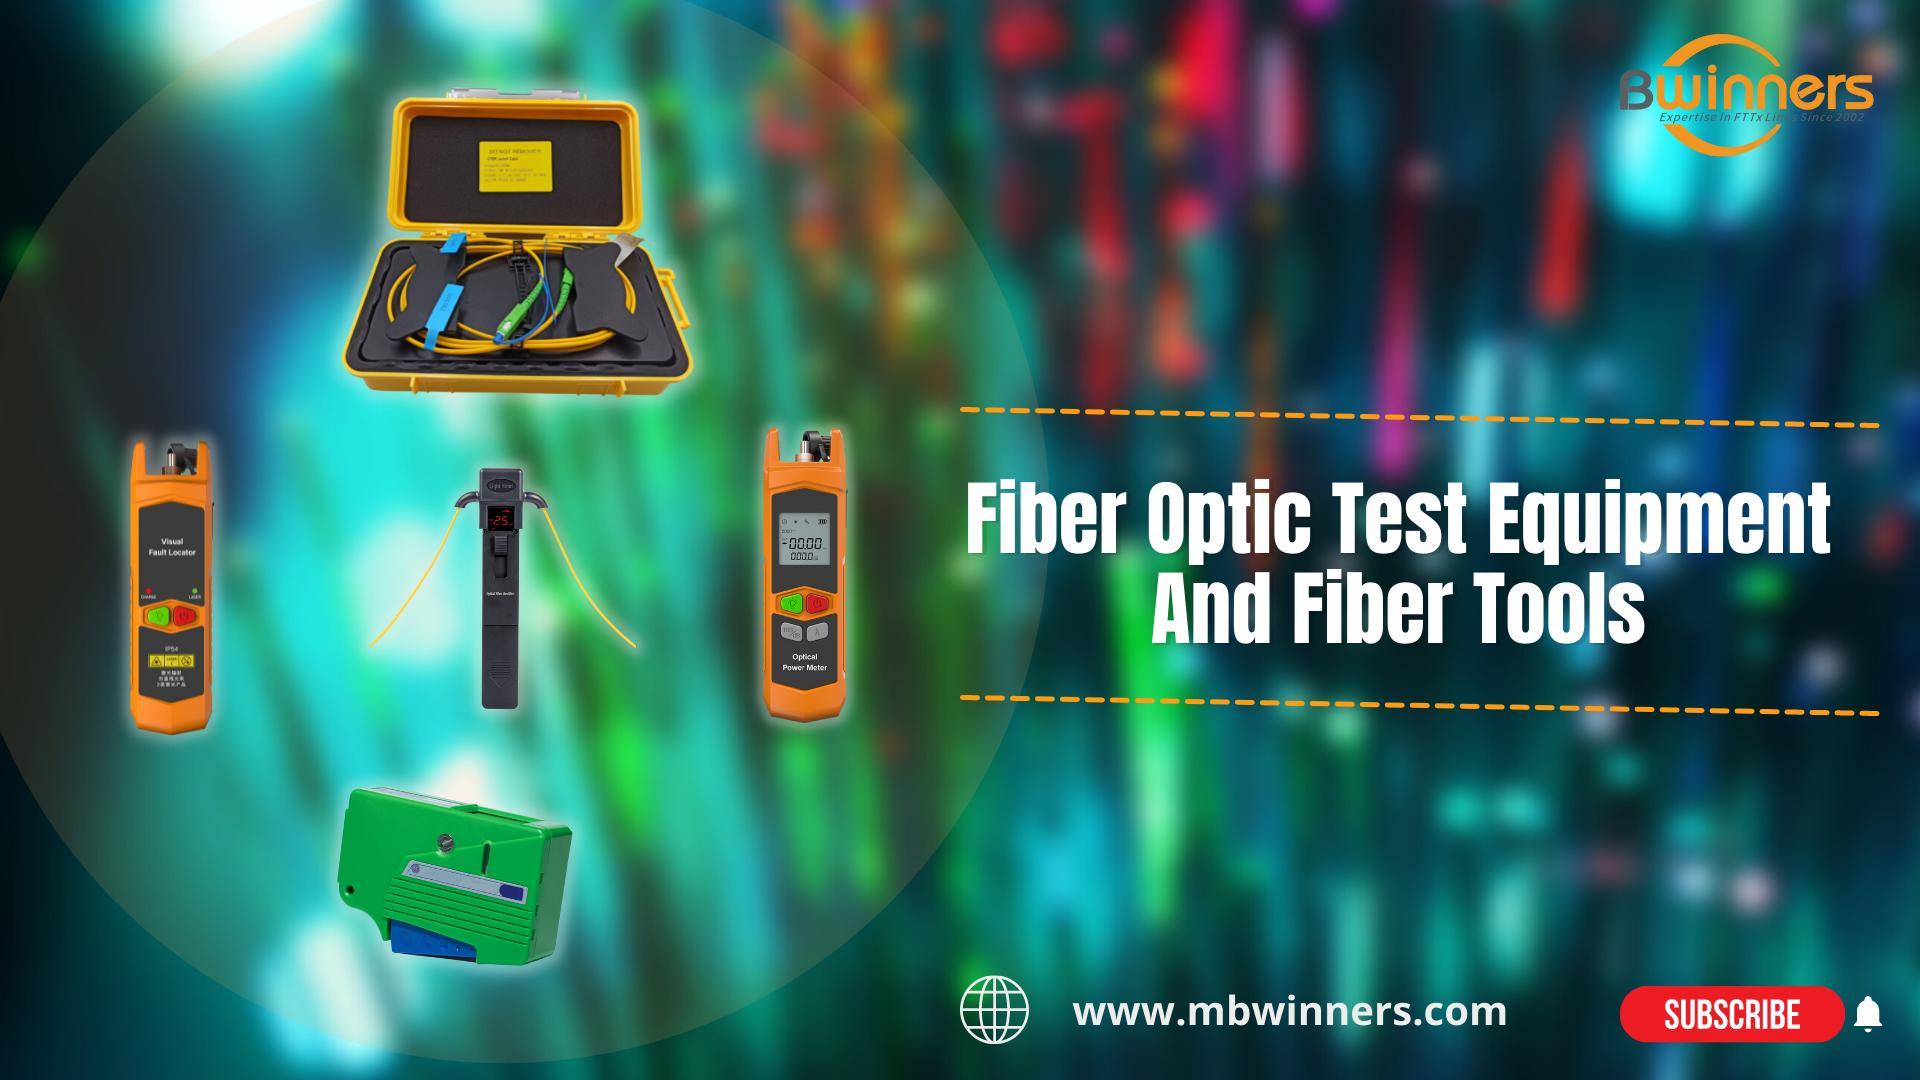 BWN-OTDR-LC2 FIBER LANDBOX | MBN-OFI-35 Live Fiber Identifier | MBN-VFL-30-C VFL-vezel | MBN-OPM-MINI MINI POWER METER | Mbn-occ fiber reiniger | Fiber optische testapparatuur en vezelgereedschap | #FTTH #FTTX | Bwinners